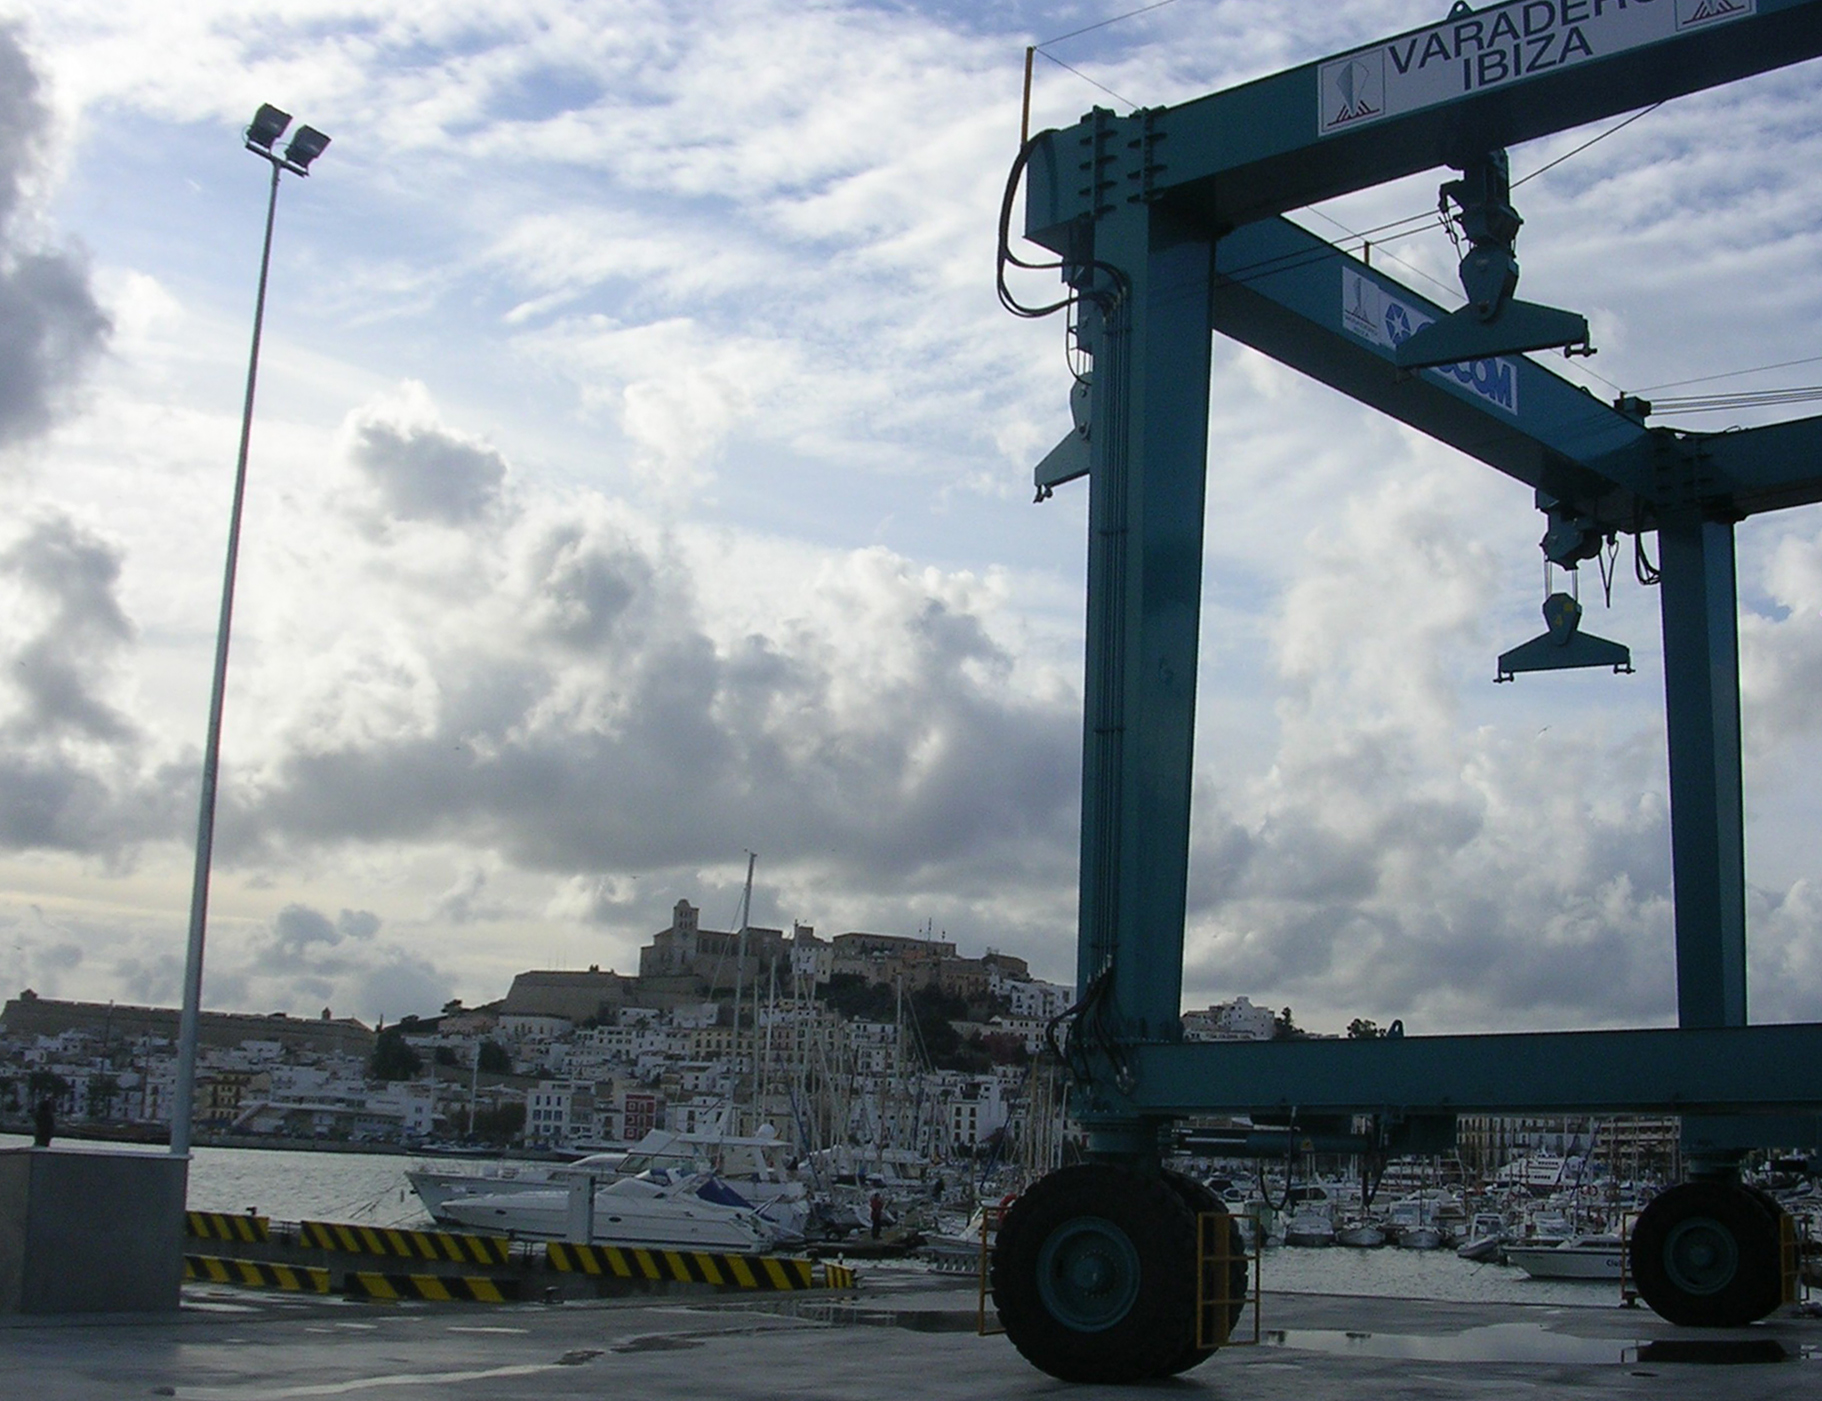 L’empresa Varadero Ibiza serà bonificada per bones pràctiques ambientals  